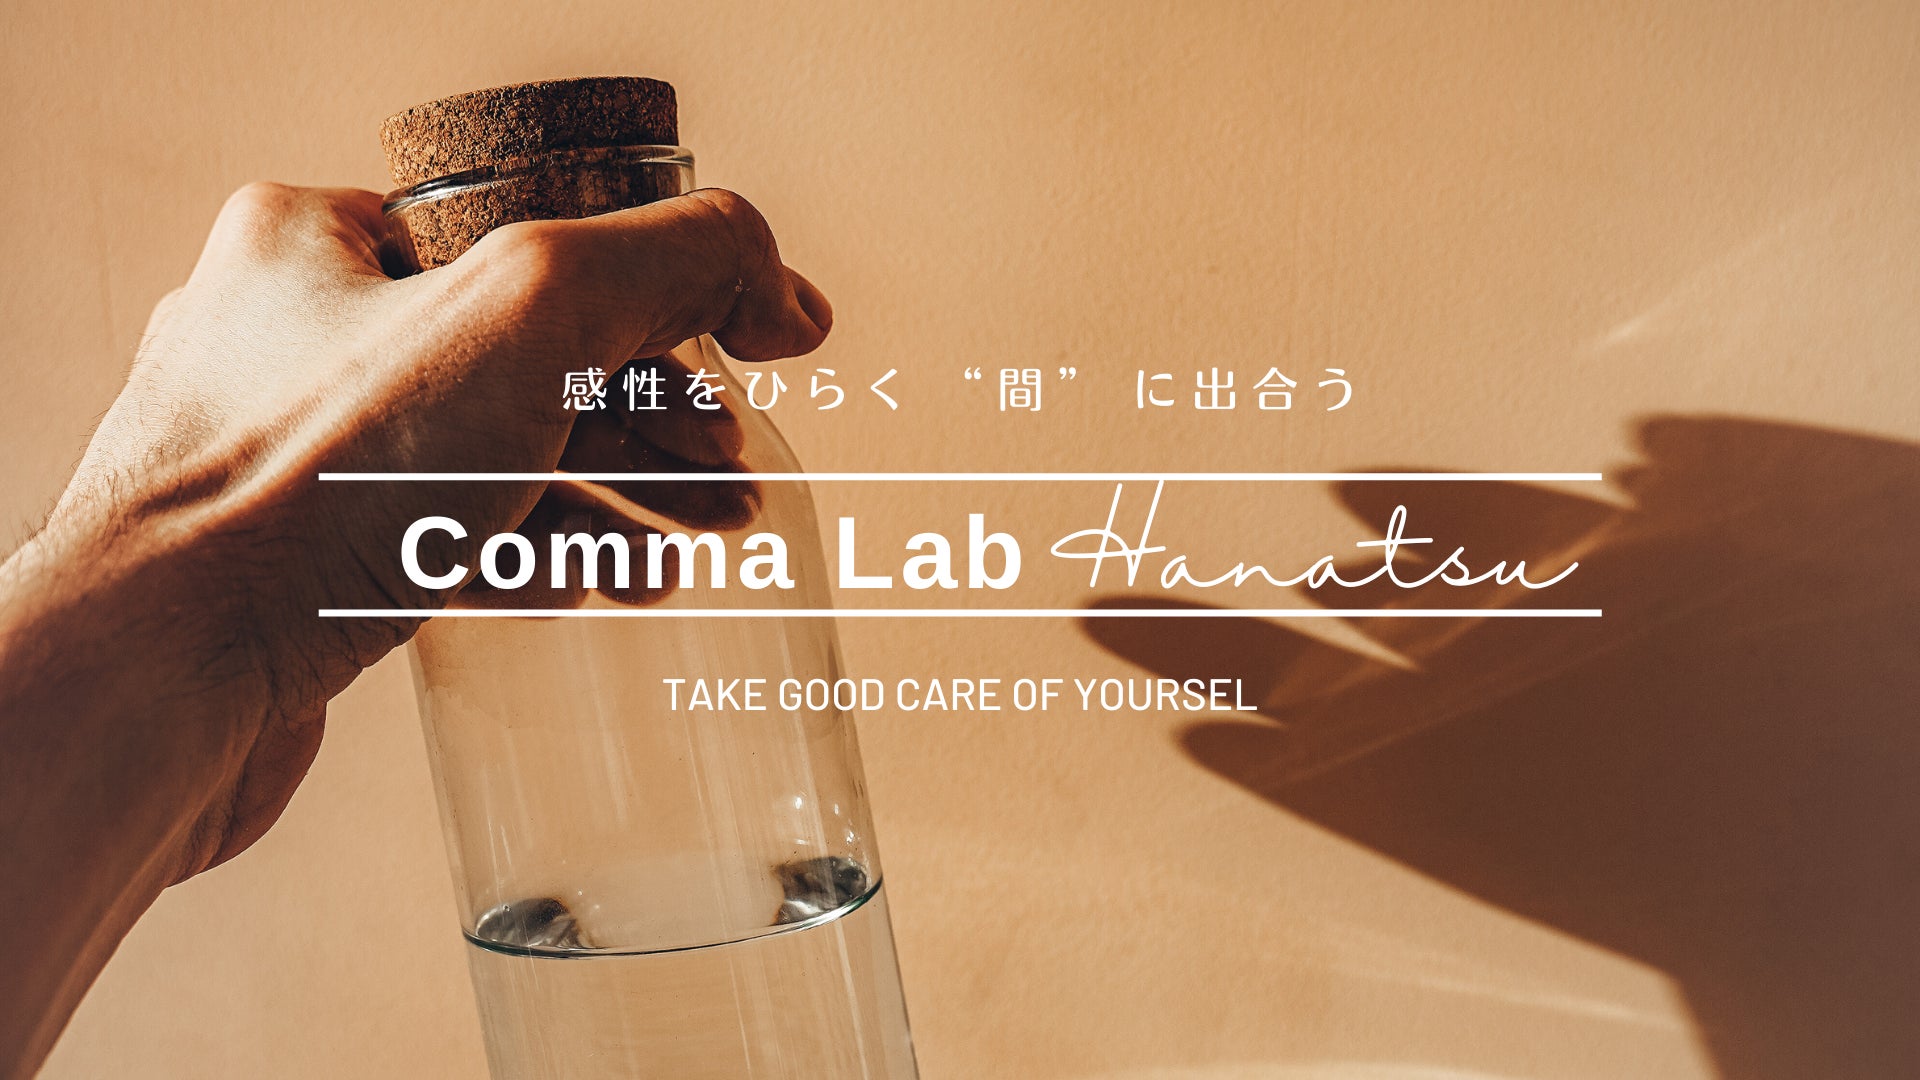 “生まれ戻る体験” 心と身体のデトックスプログラム「Comma Lab Hanatsu -はなつ-」第1期 3/31まで募集中